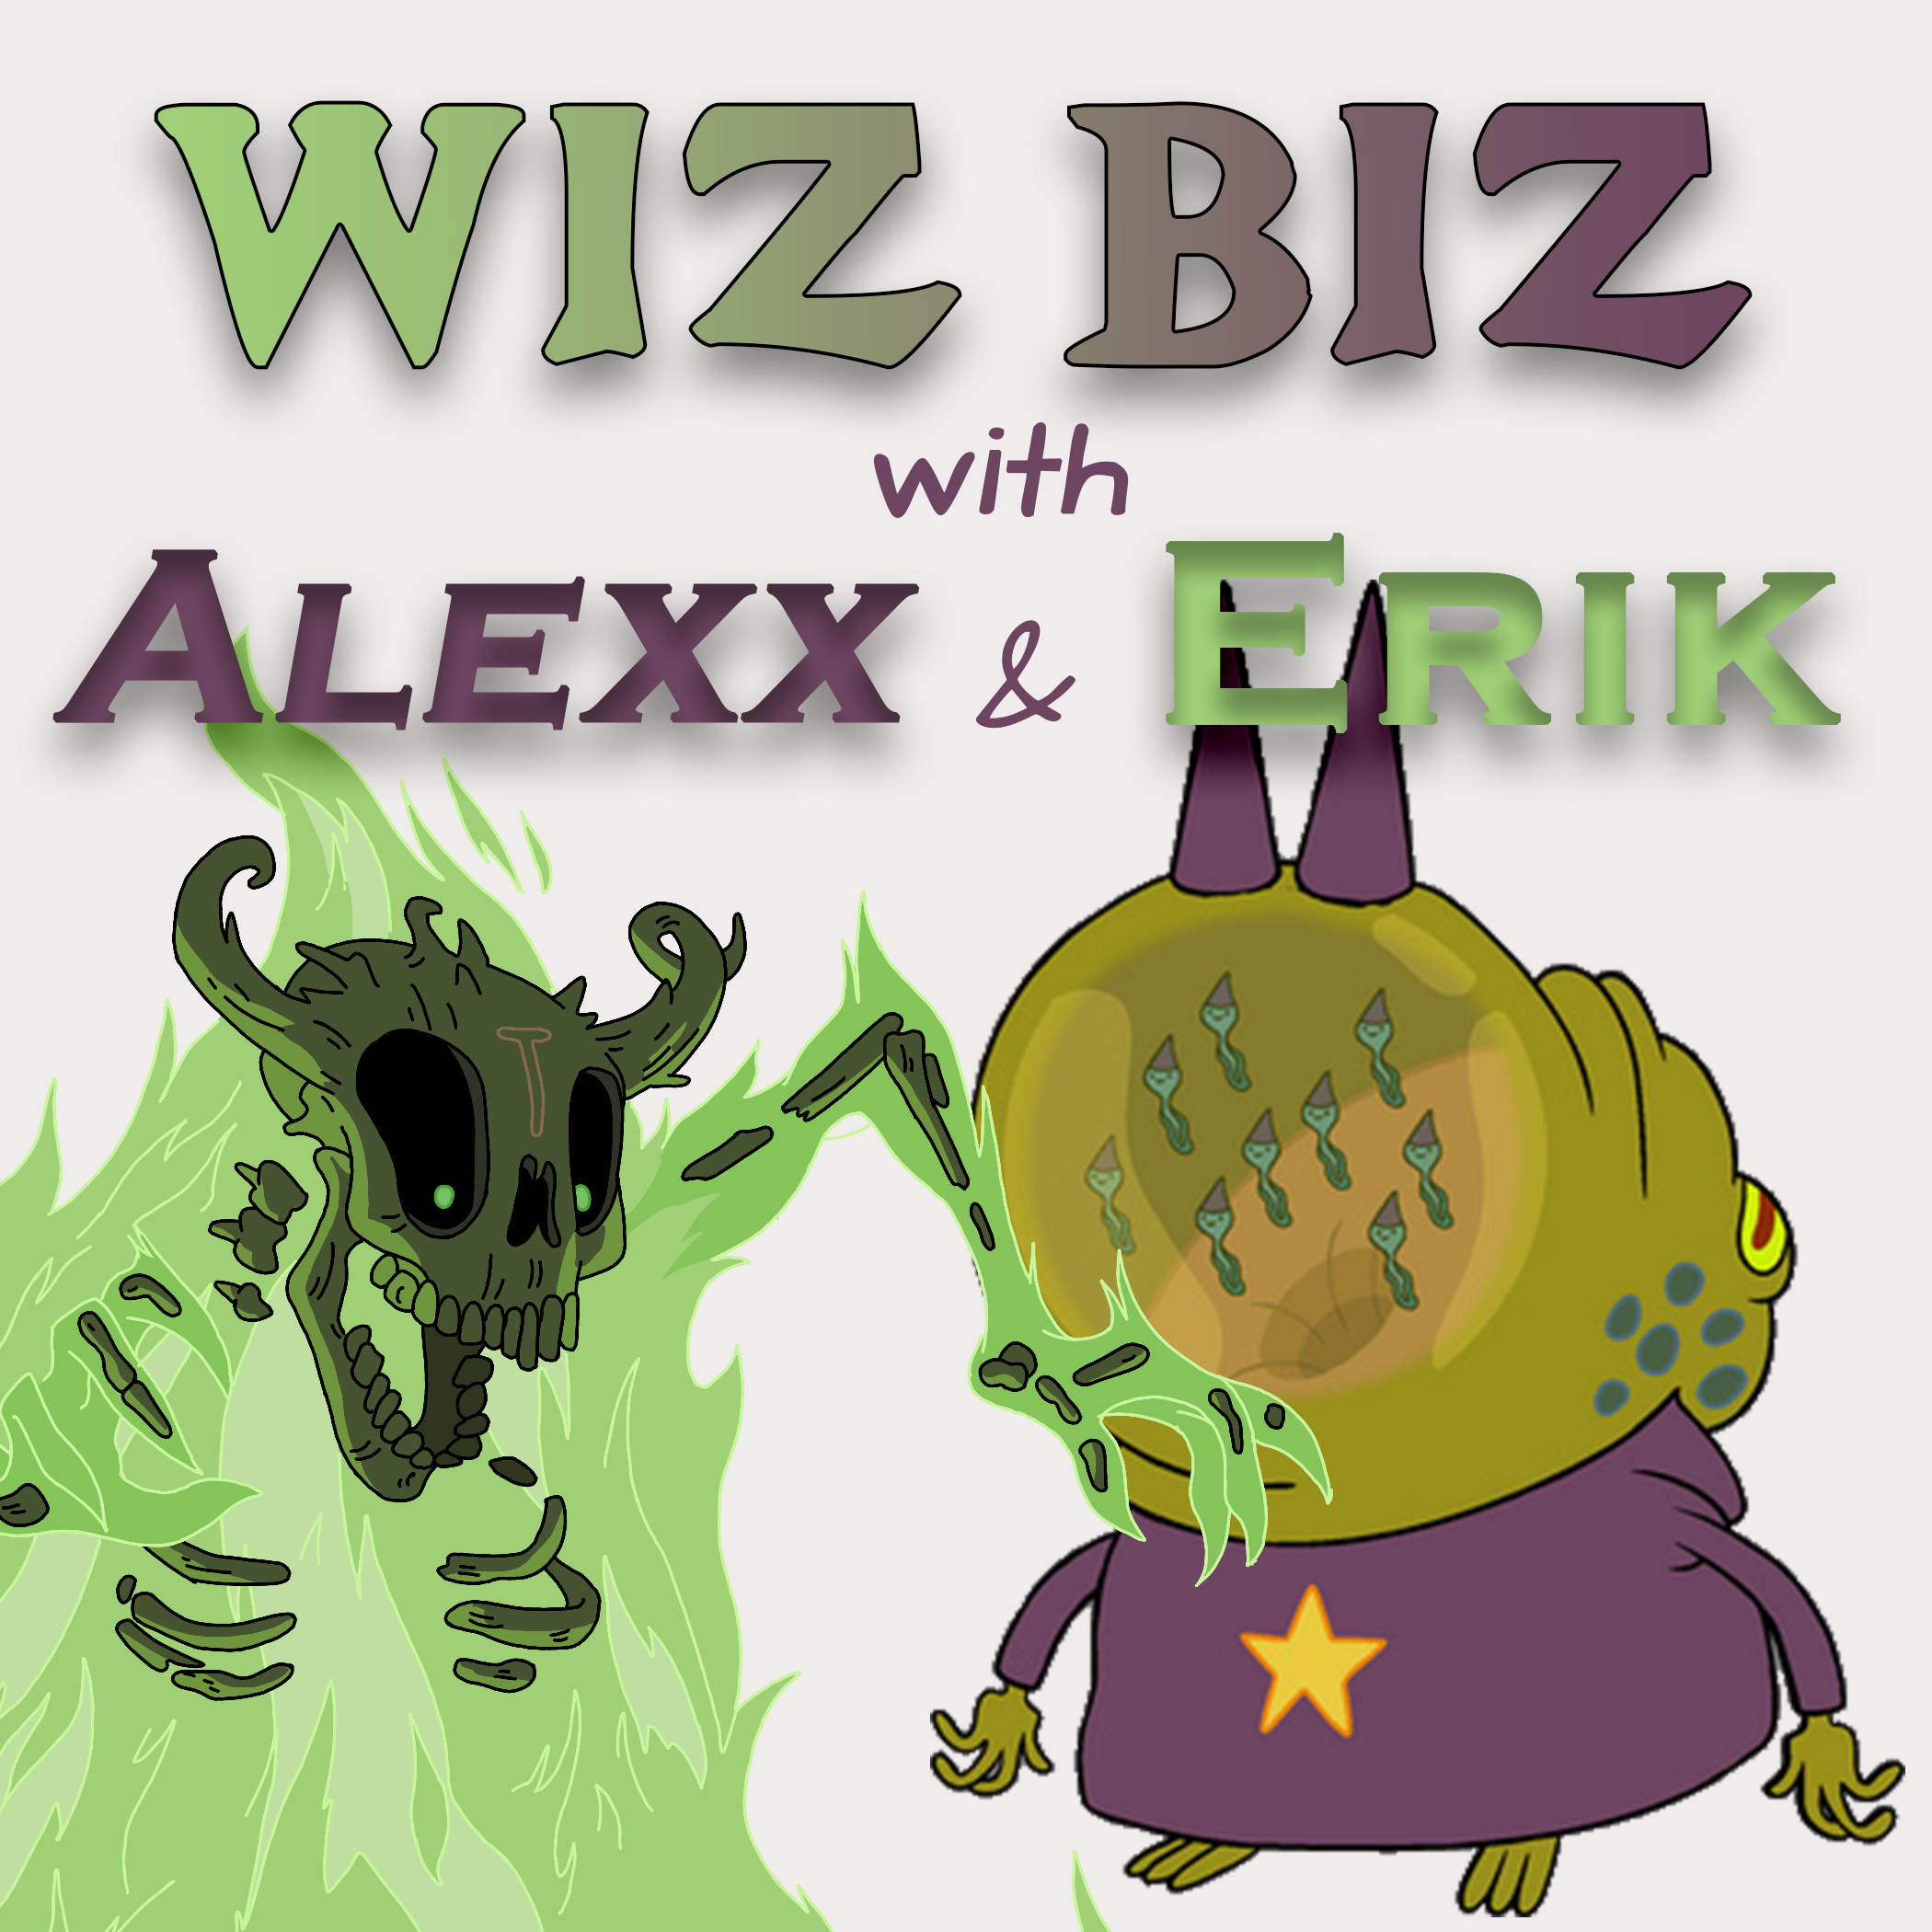 Show artwork for Wiz Biz with Alexx and Erik